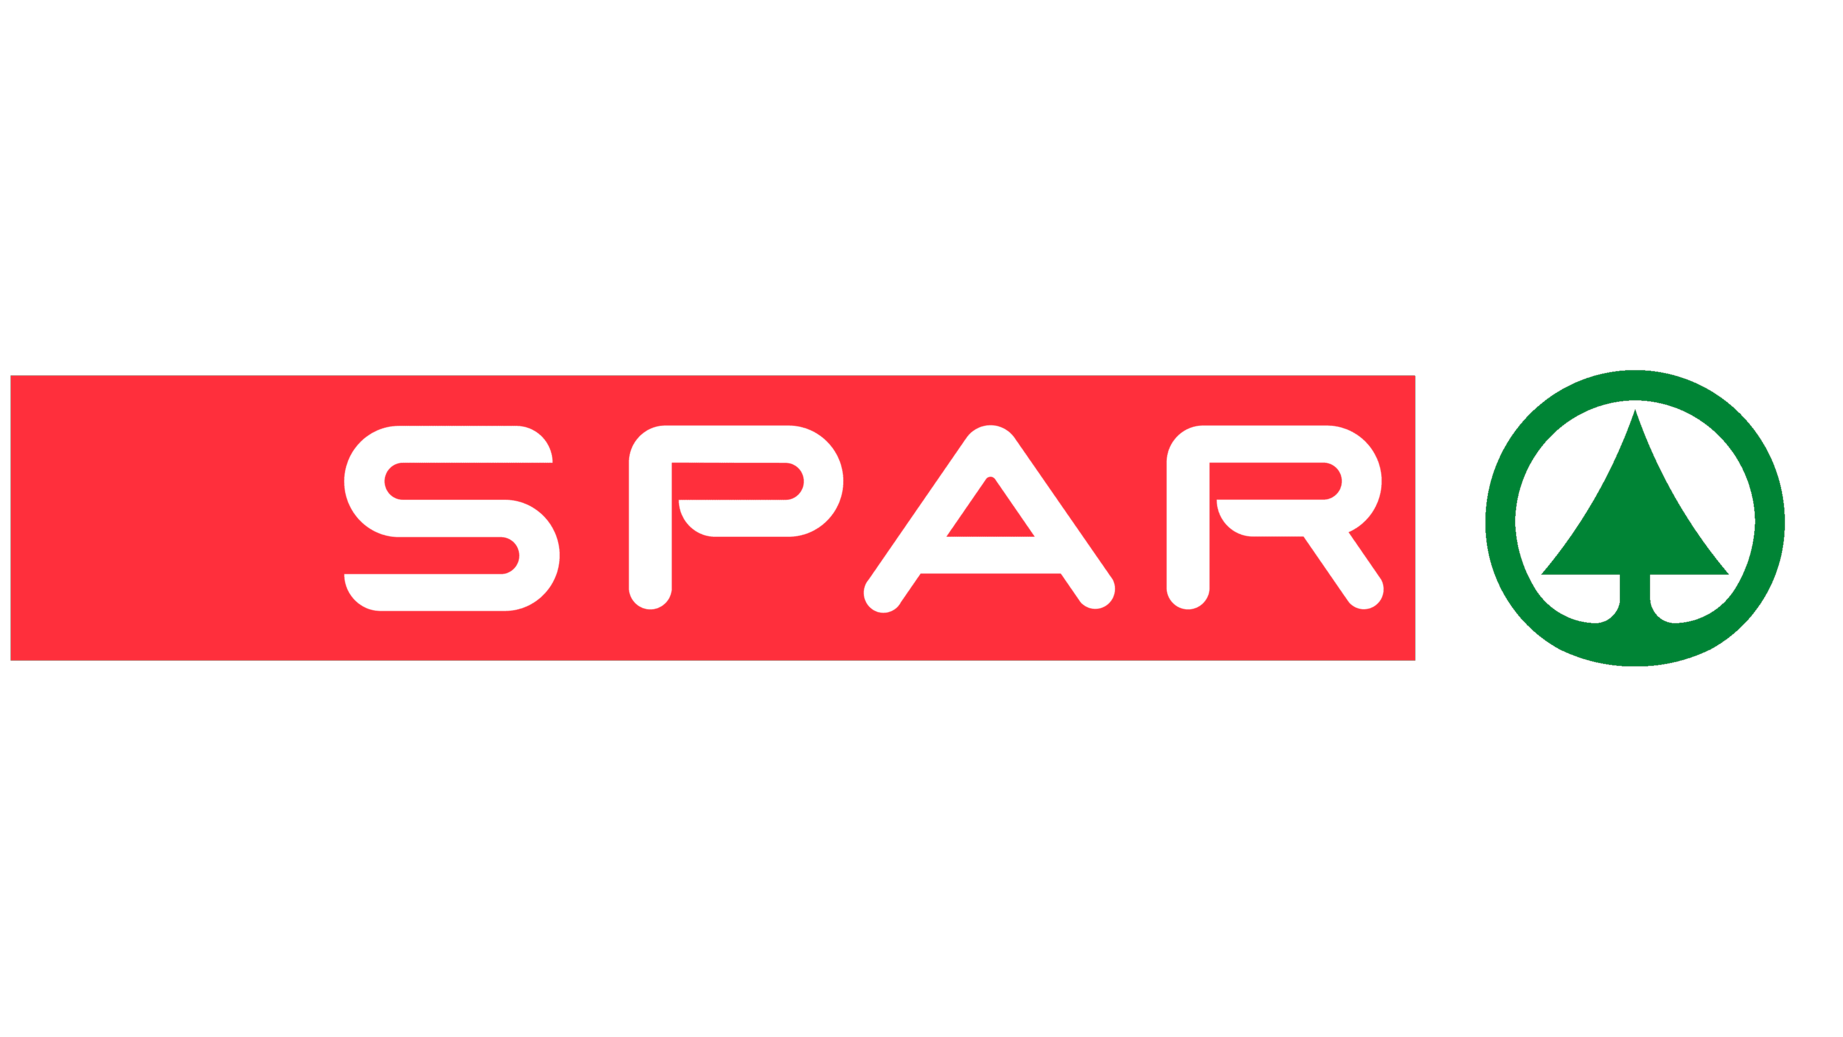 Spar symbol